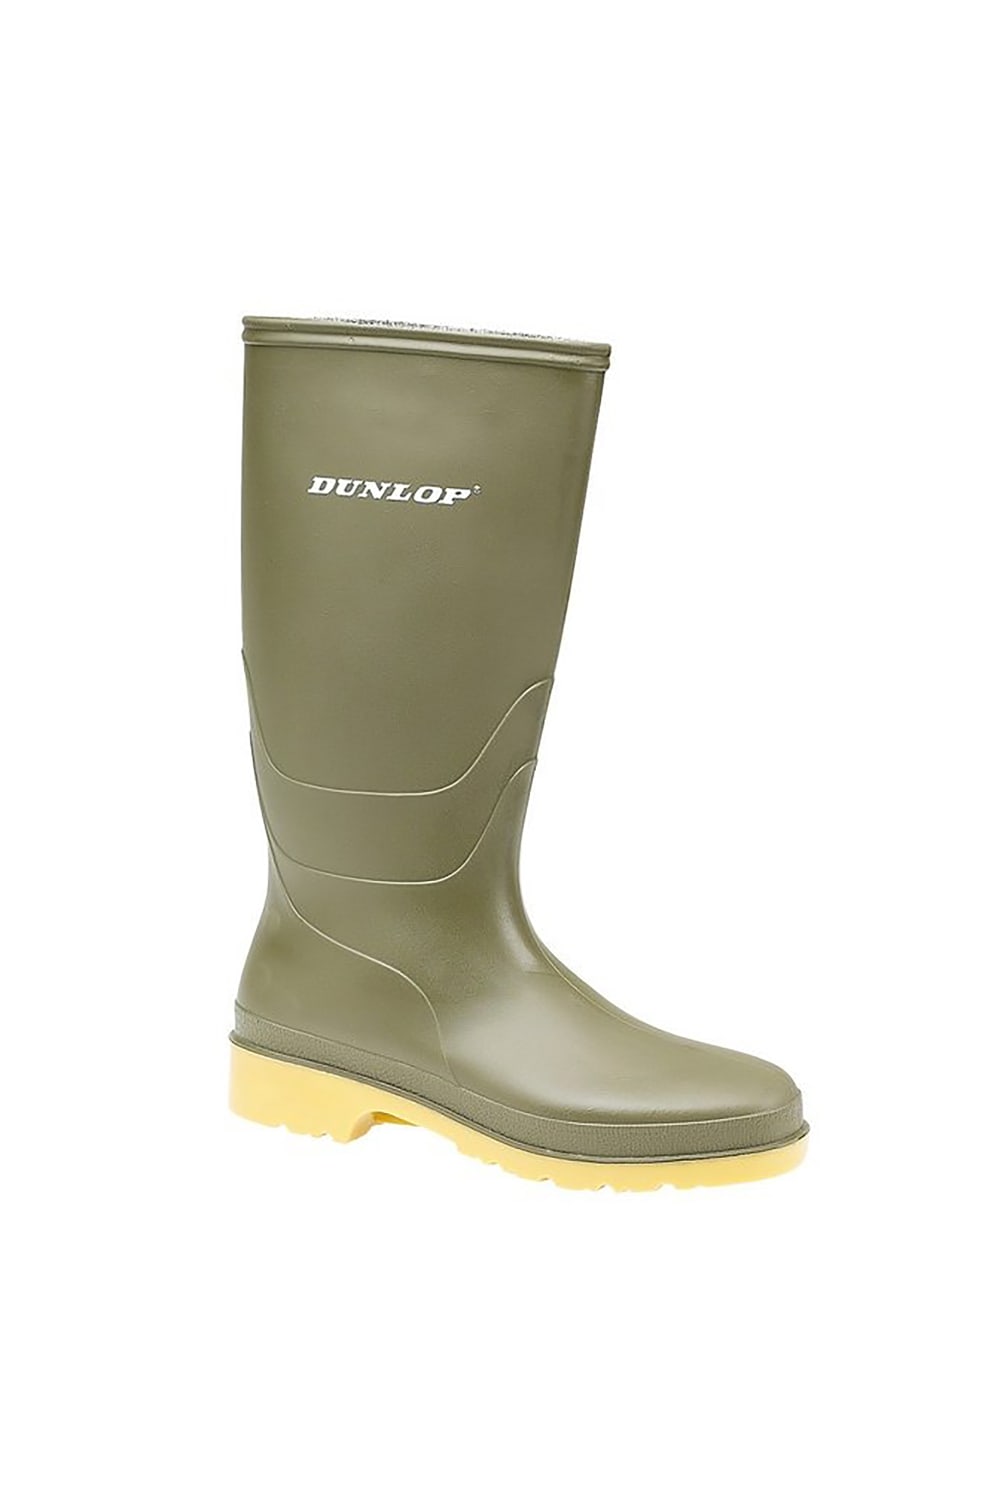 DUNLOP Childrens/Kids Unisex 16247 DULLS Rain Boots/Wellington Boots (Green)